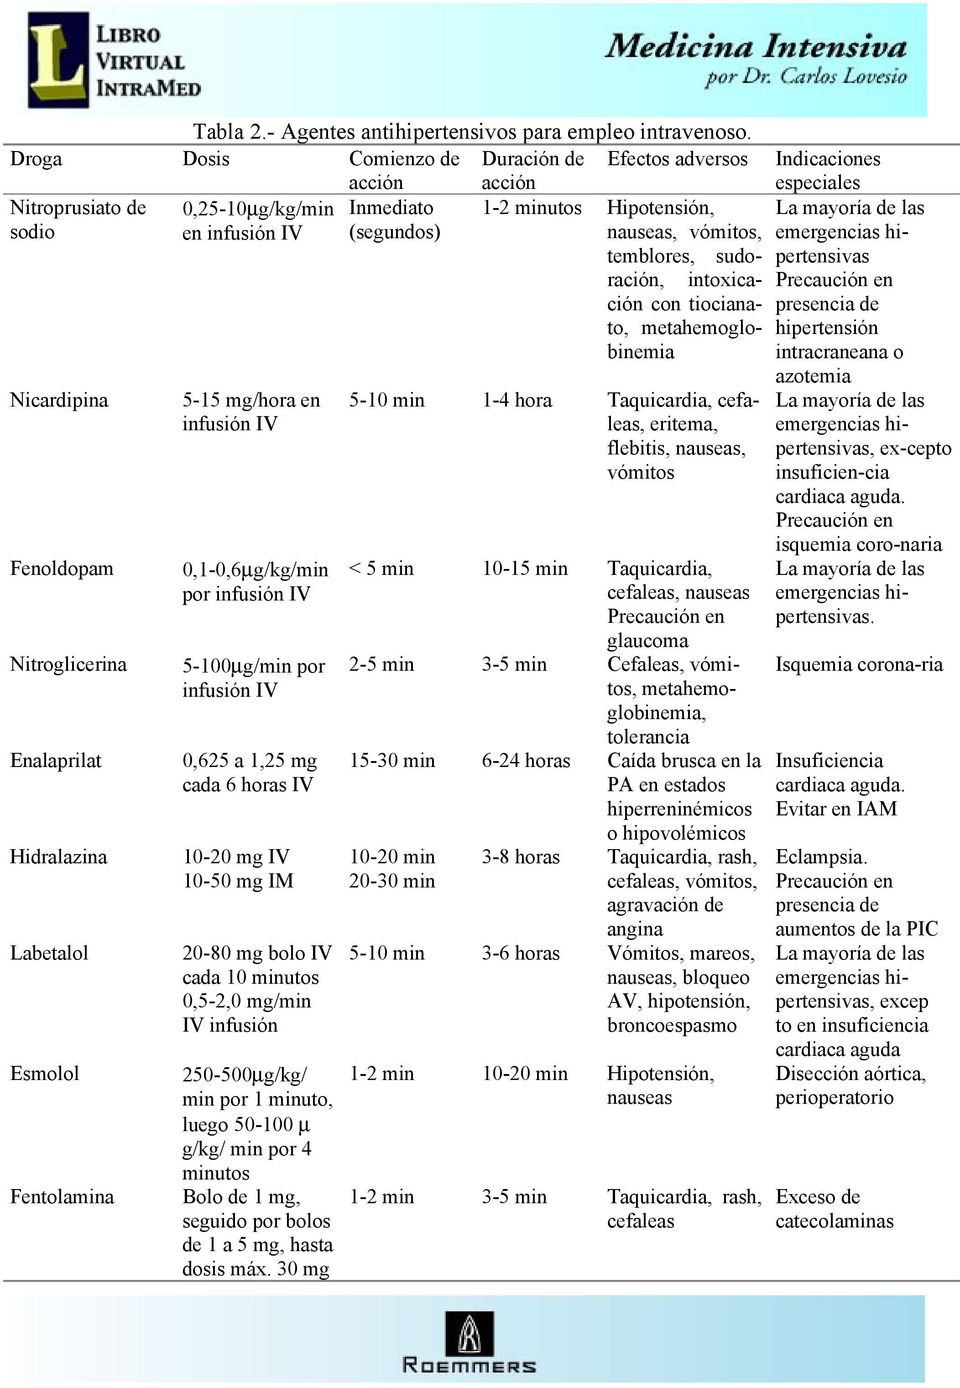 Hidralazina Labetalol Esmolol Fentolamina 5-15 mg/hora en infusión IV 0,1-0,6µg/kg/min por infusión IV 5-100µg/min por infusión IV 0,625 a 1,25 mg cada 6 horas IV 10-20 mg IV 10-50 mg IM 20-80 mg